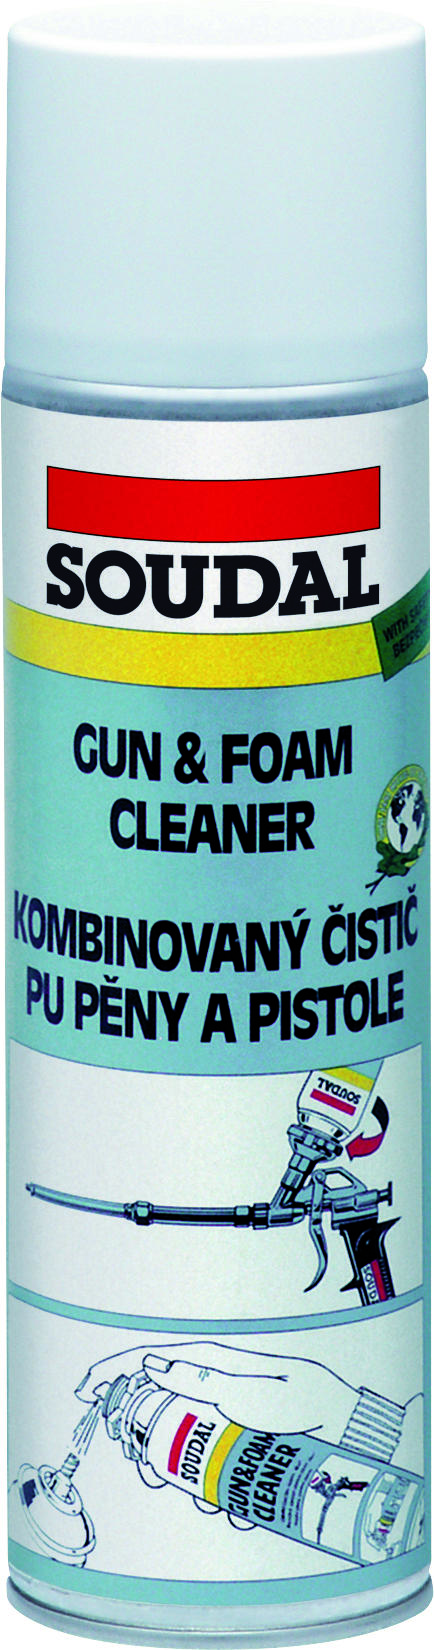 Soudal Gun Cleaner 500ml